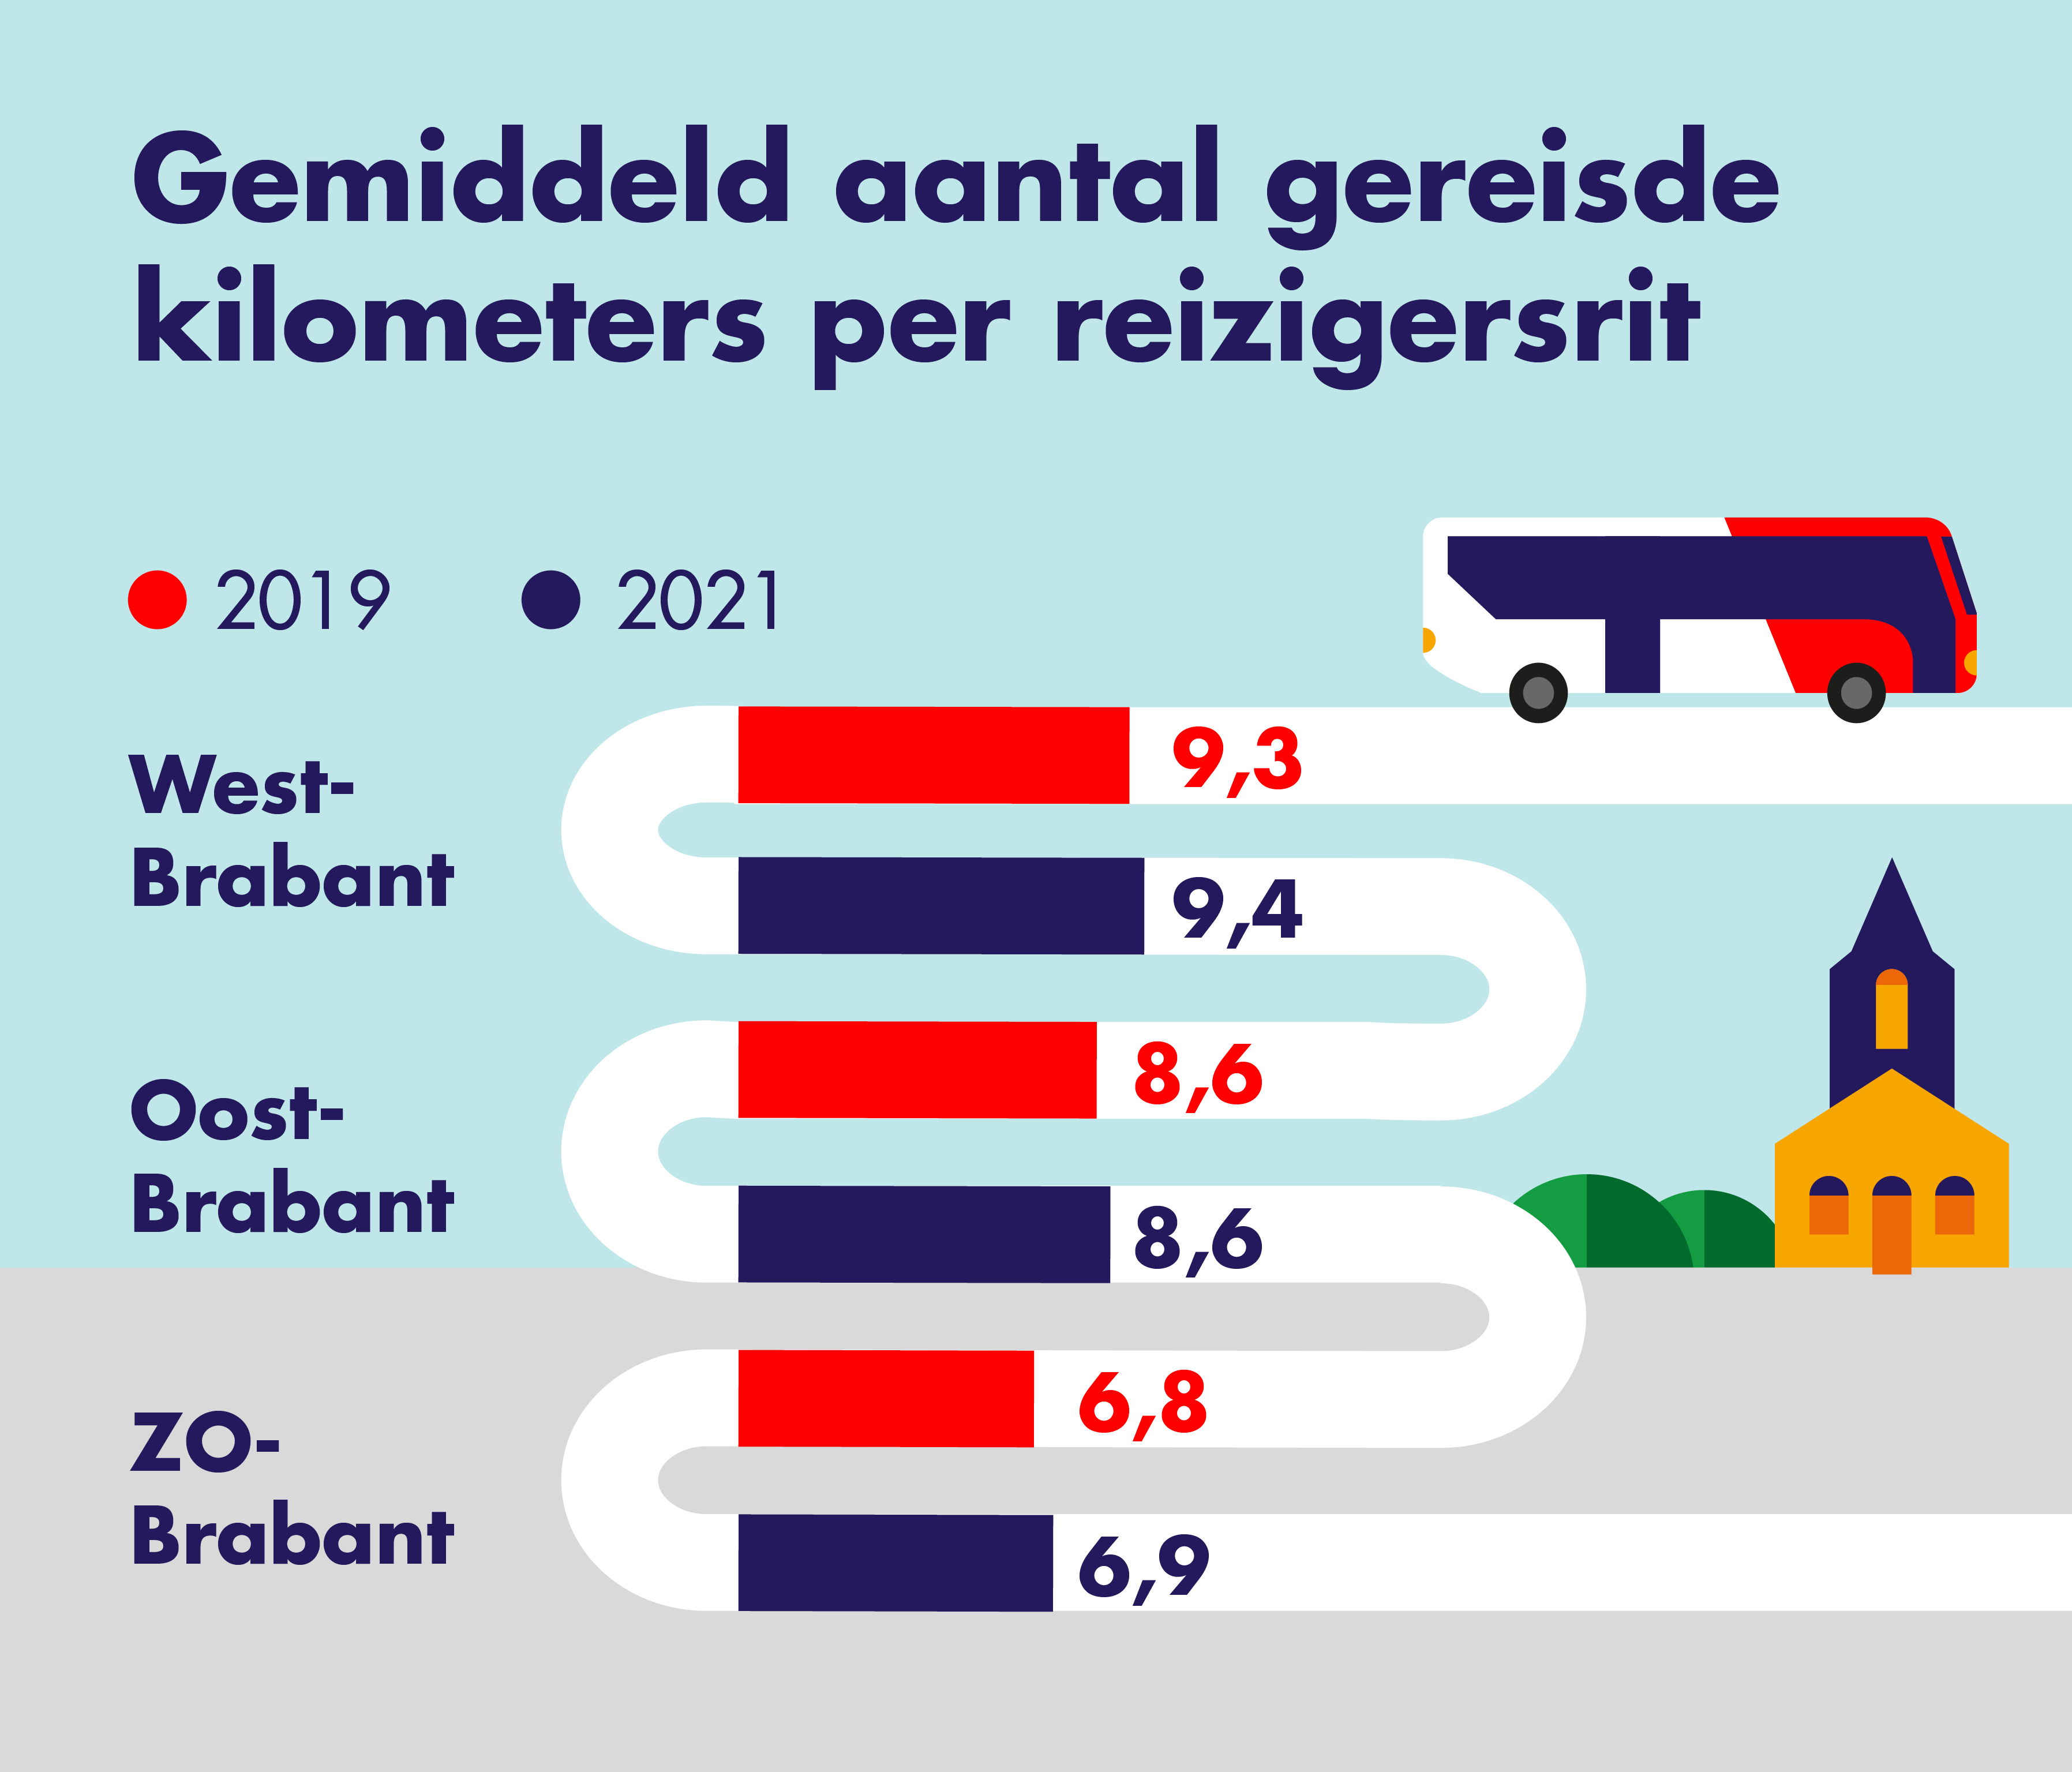 Op deze afbeelding is het gemiddeld aantal gereisde kilometers per reizigersrit en 
                    per consessiegebied weergegeven. Er wordt een vergelijking gemaakt tussen 2019 en 2021.